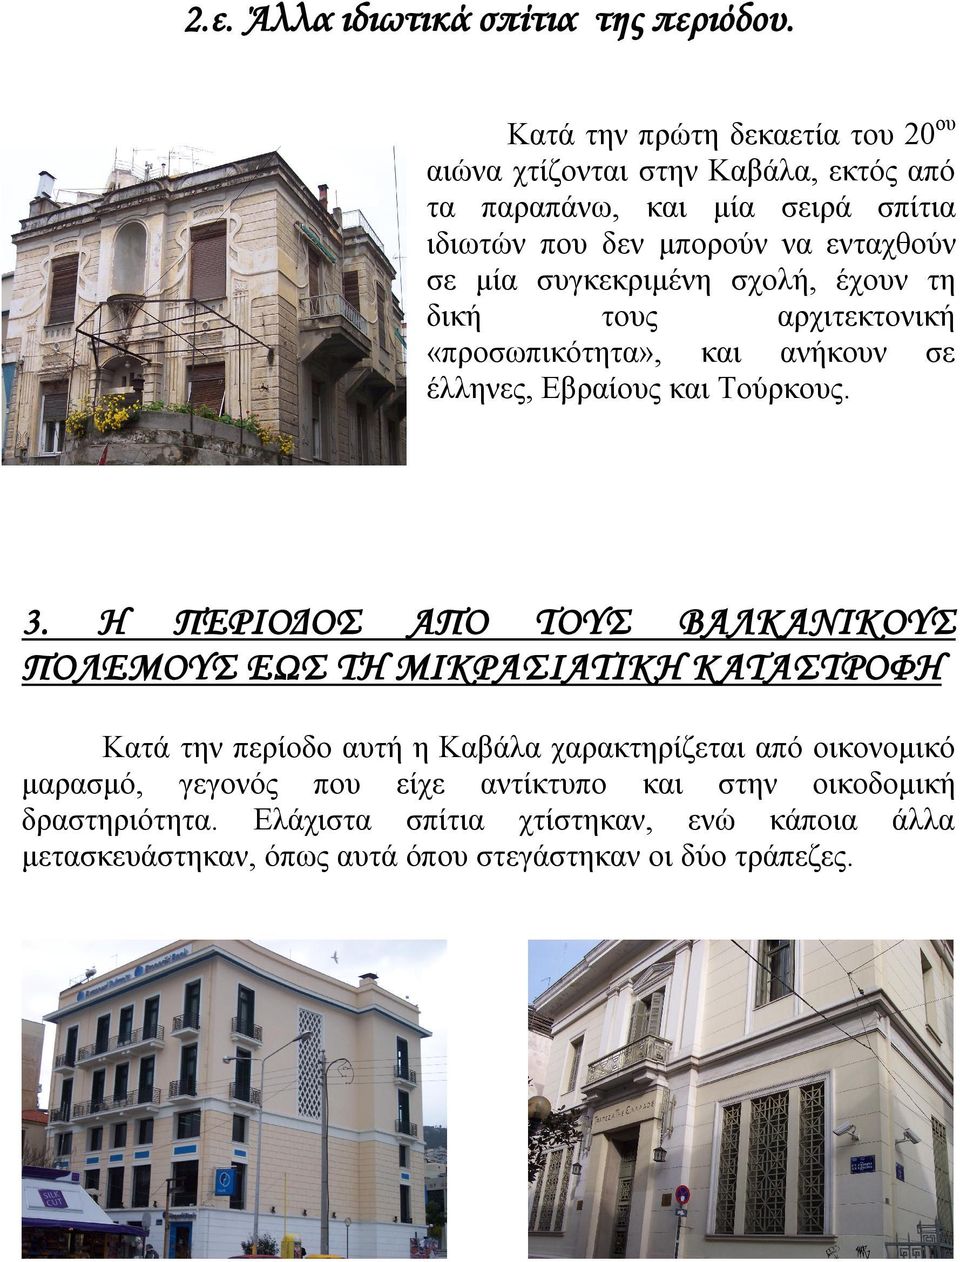 συγκεκριμένη σχολή, έχουν τη δική τους αρχιτεκτονική «προσωπικότητα», και ανήκουν σε έλληνες, Εβραίους και Τούρκους. 3.